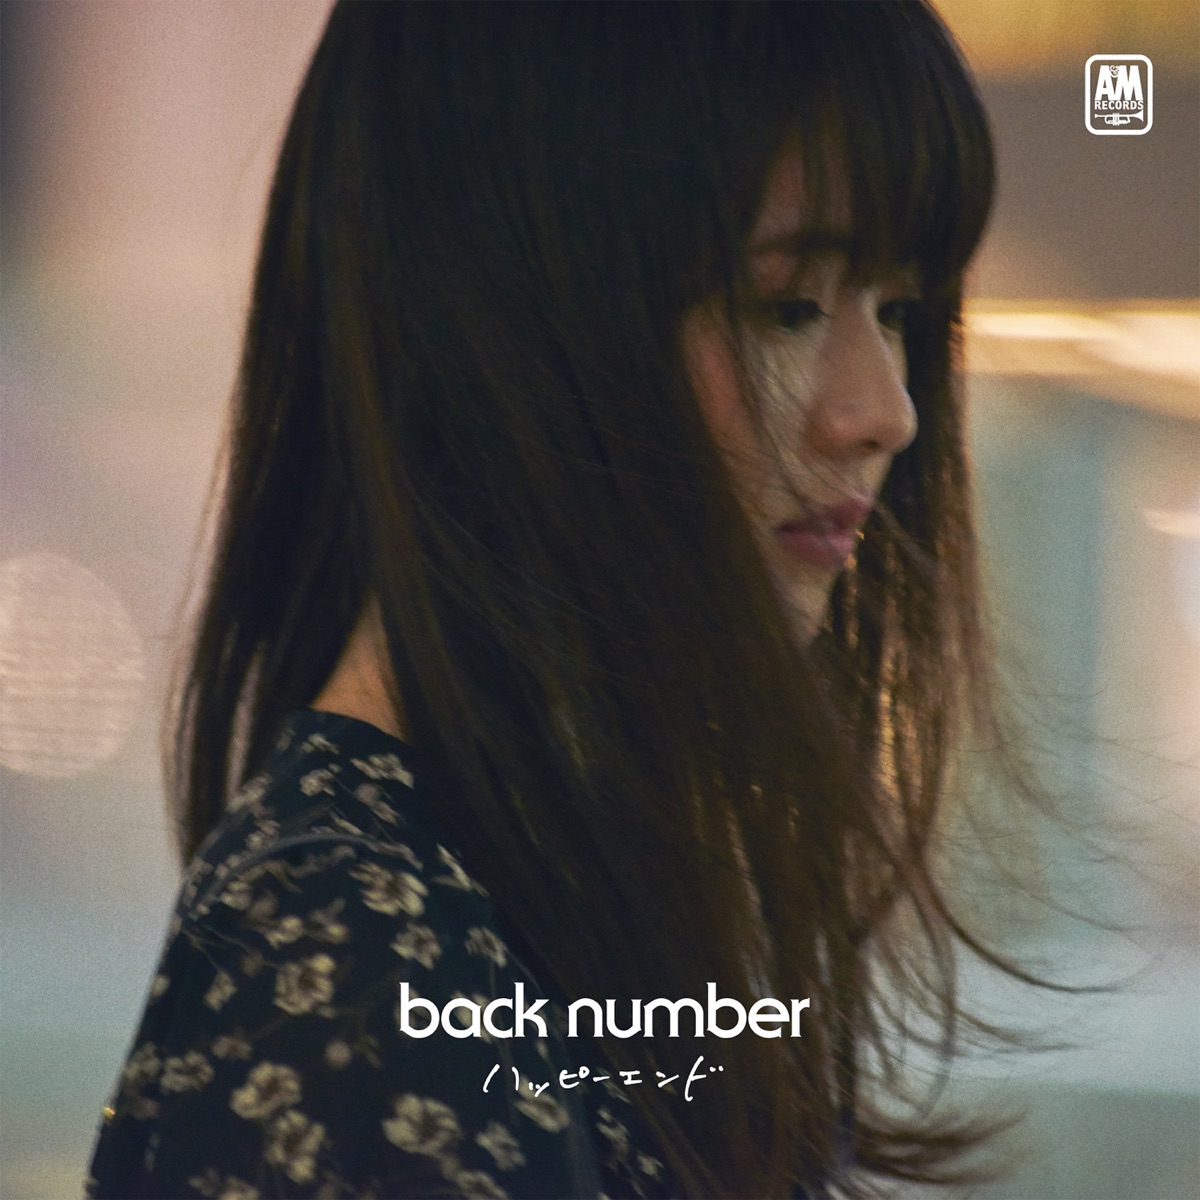 『back number - ハッピーエンド 歌詞』収録の『ハッピーエンド』ジャケット